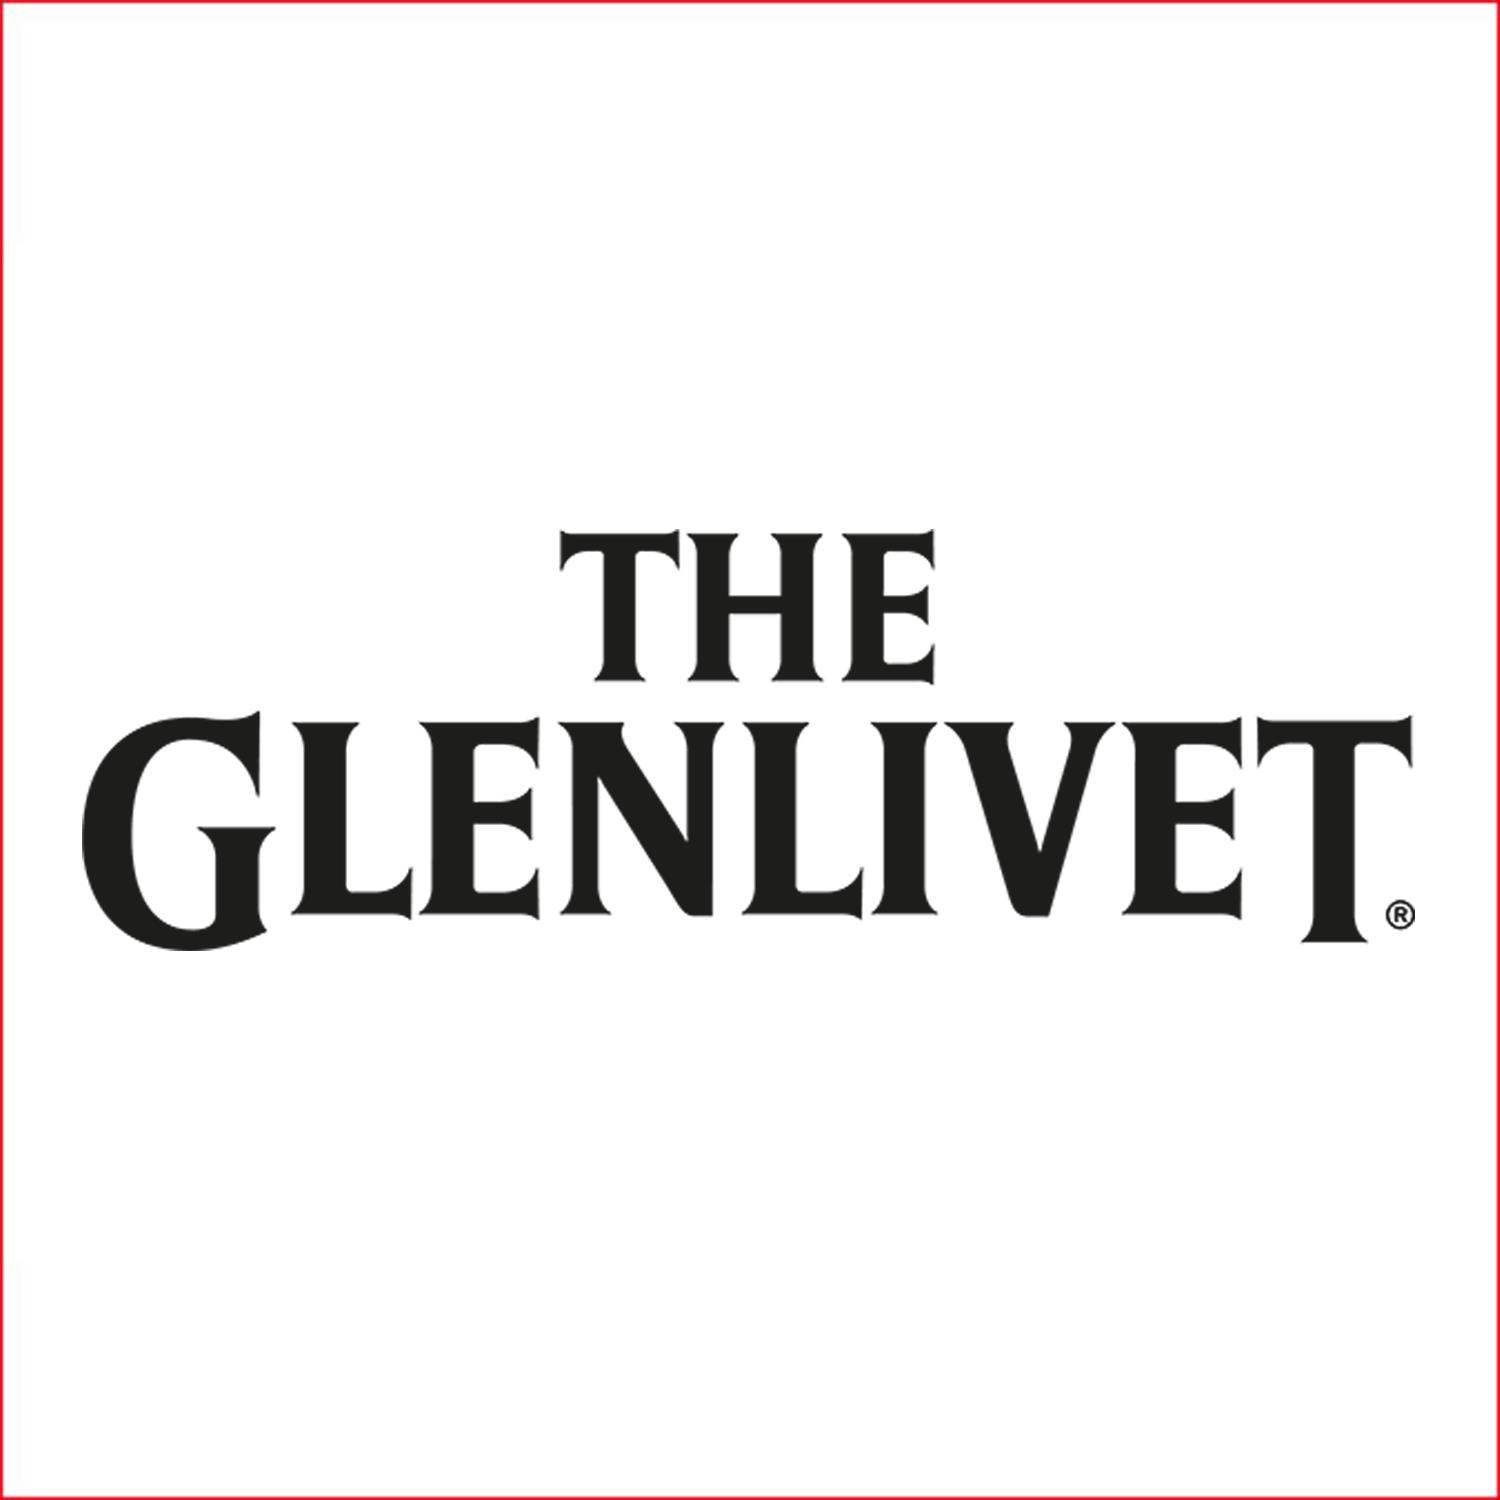 格兰威特 The Glenlivet